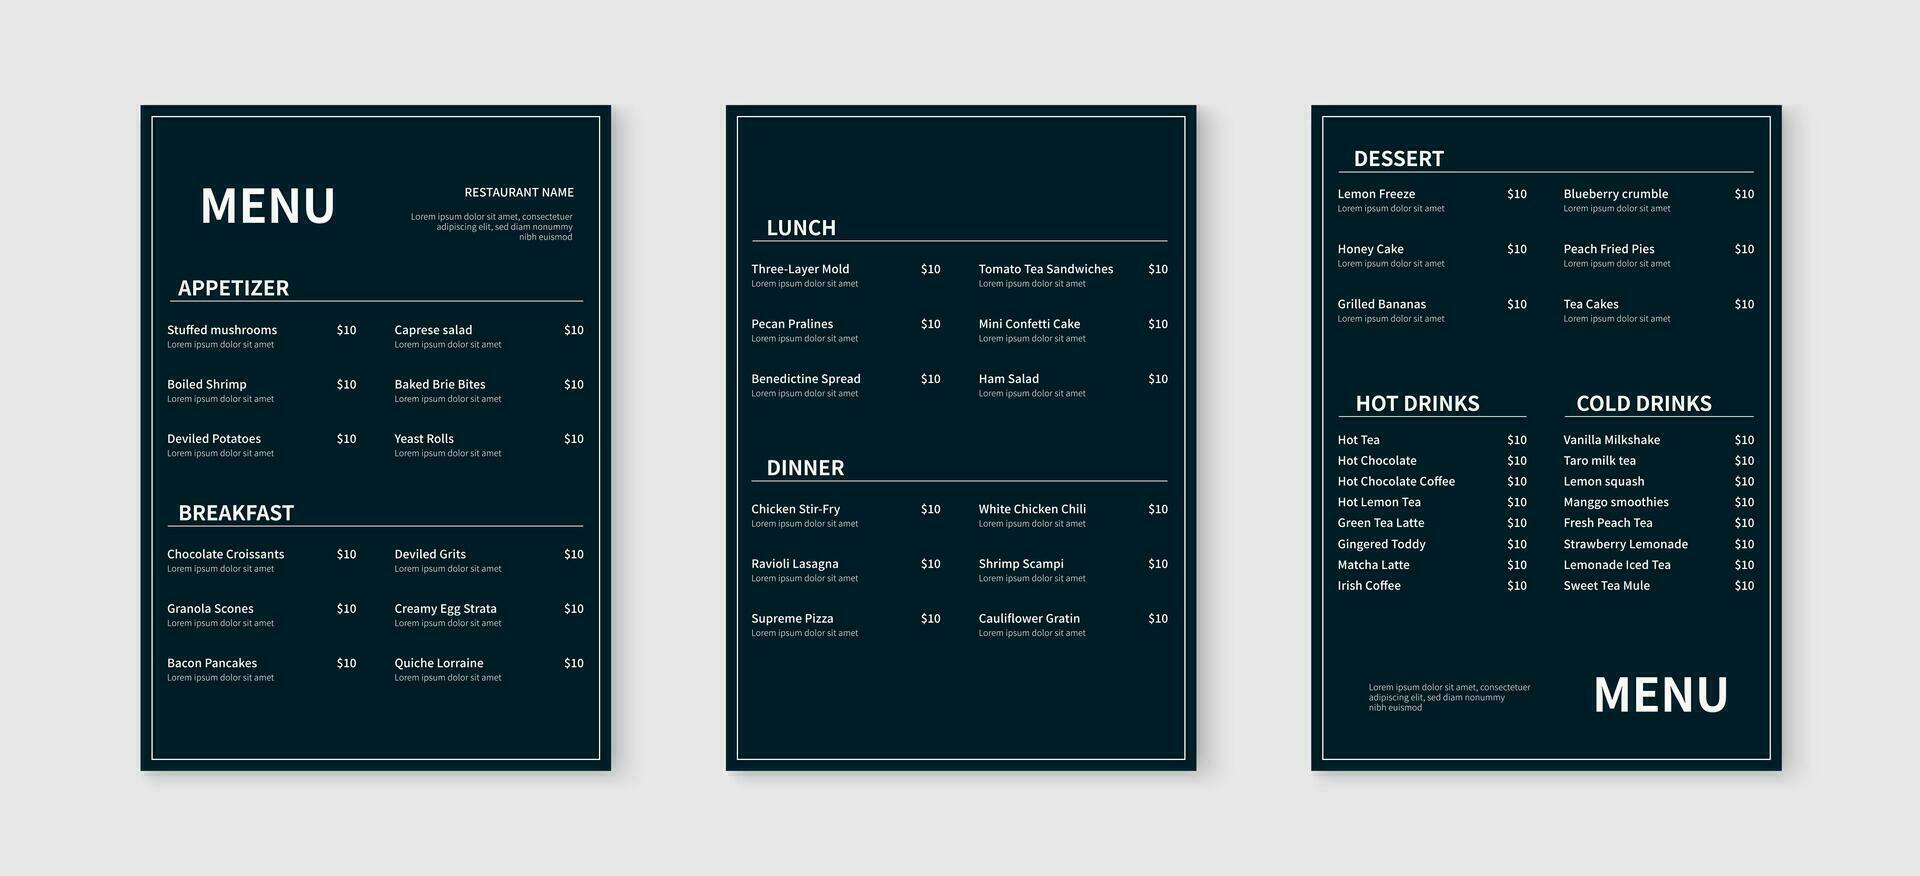 Elegant restaurant menu design template. Food and drink menu flyer layout design. Vector illustration